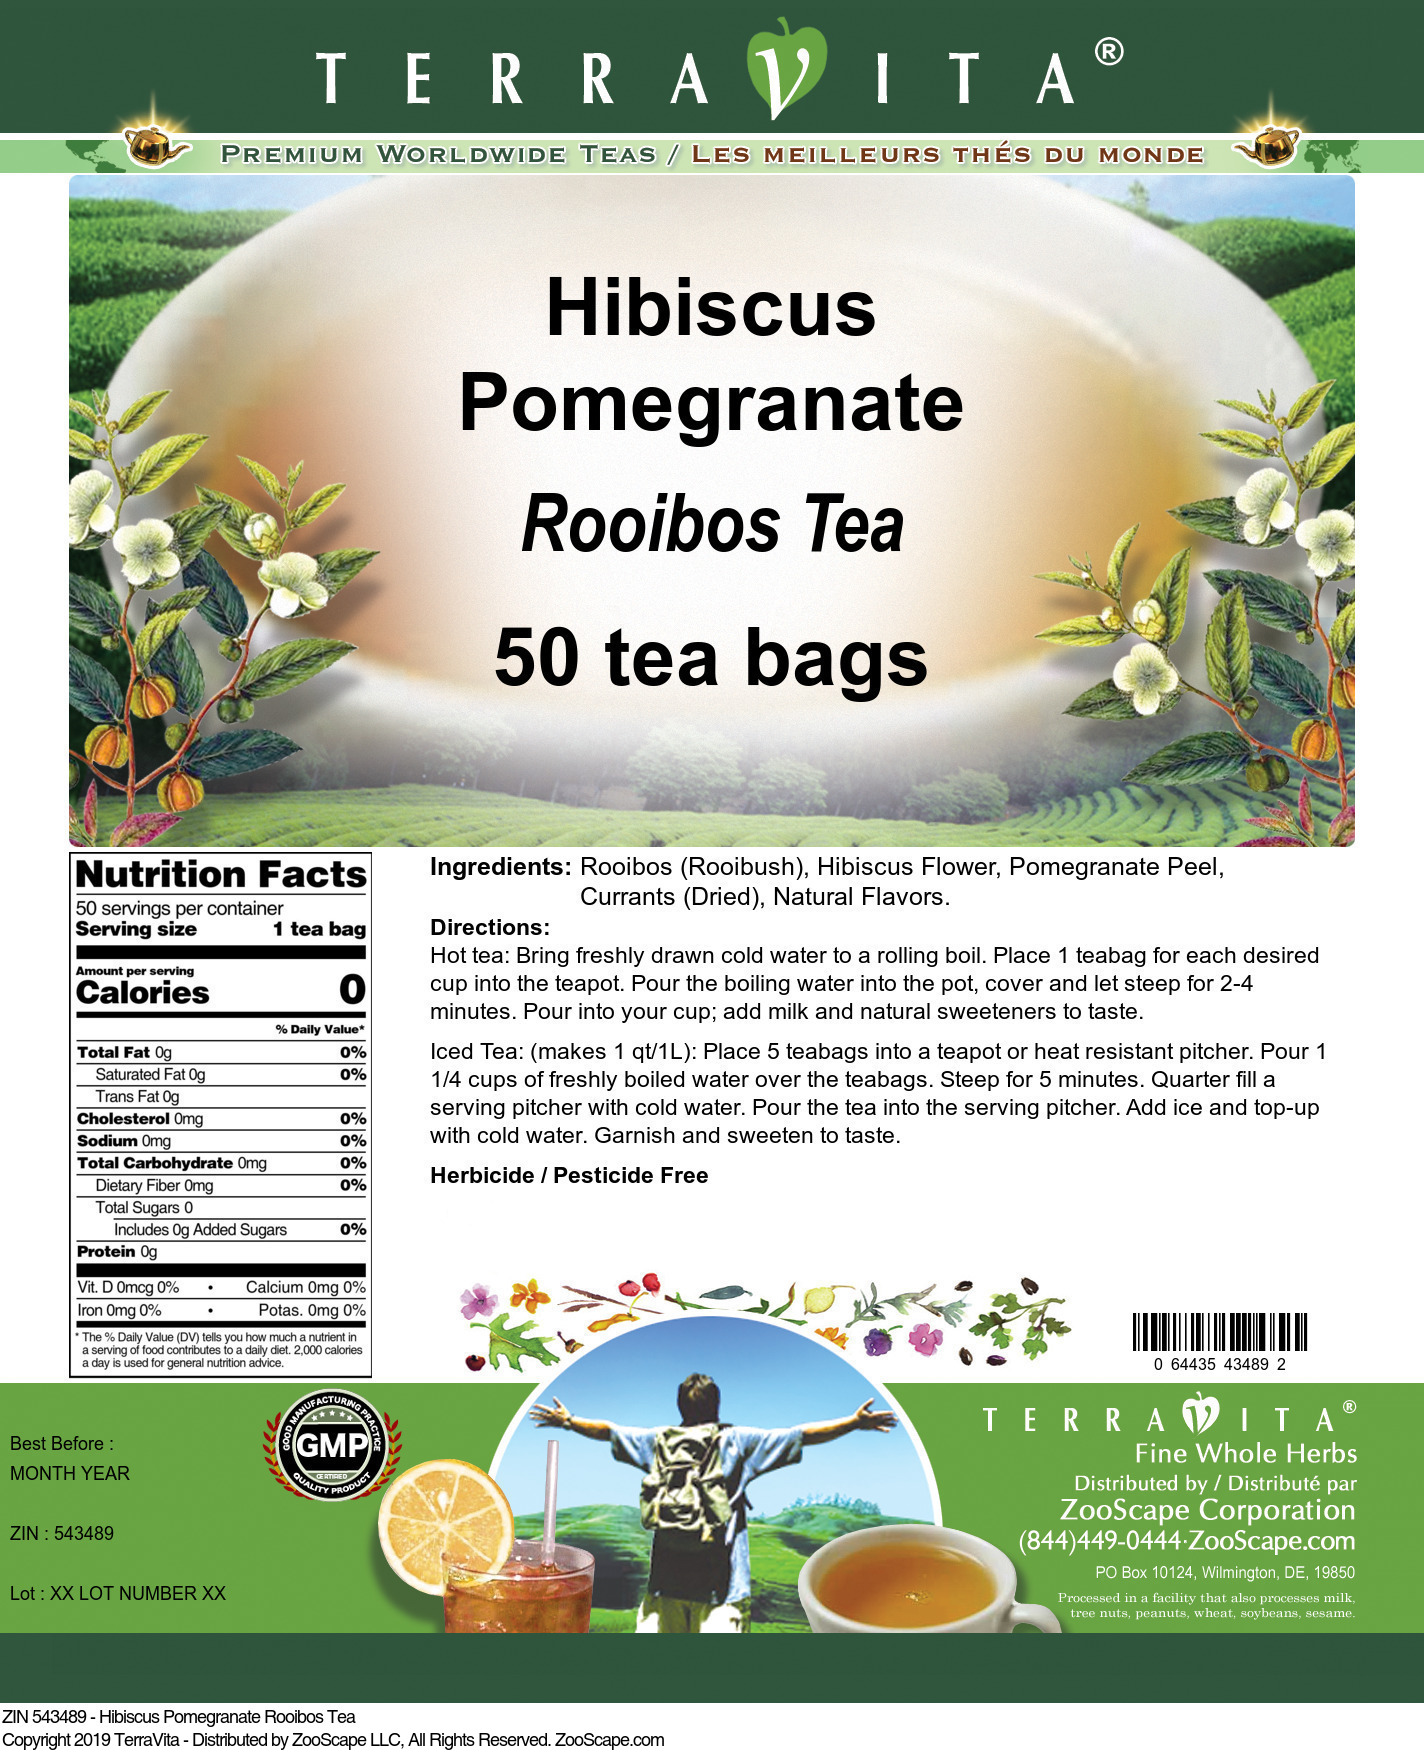 Hibiscus Pomegranate Rooibos Tea - Label